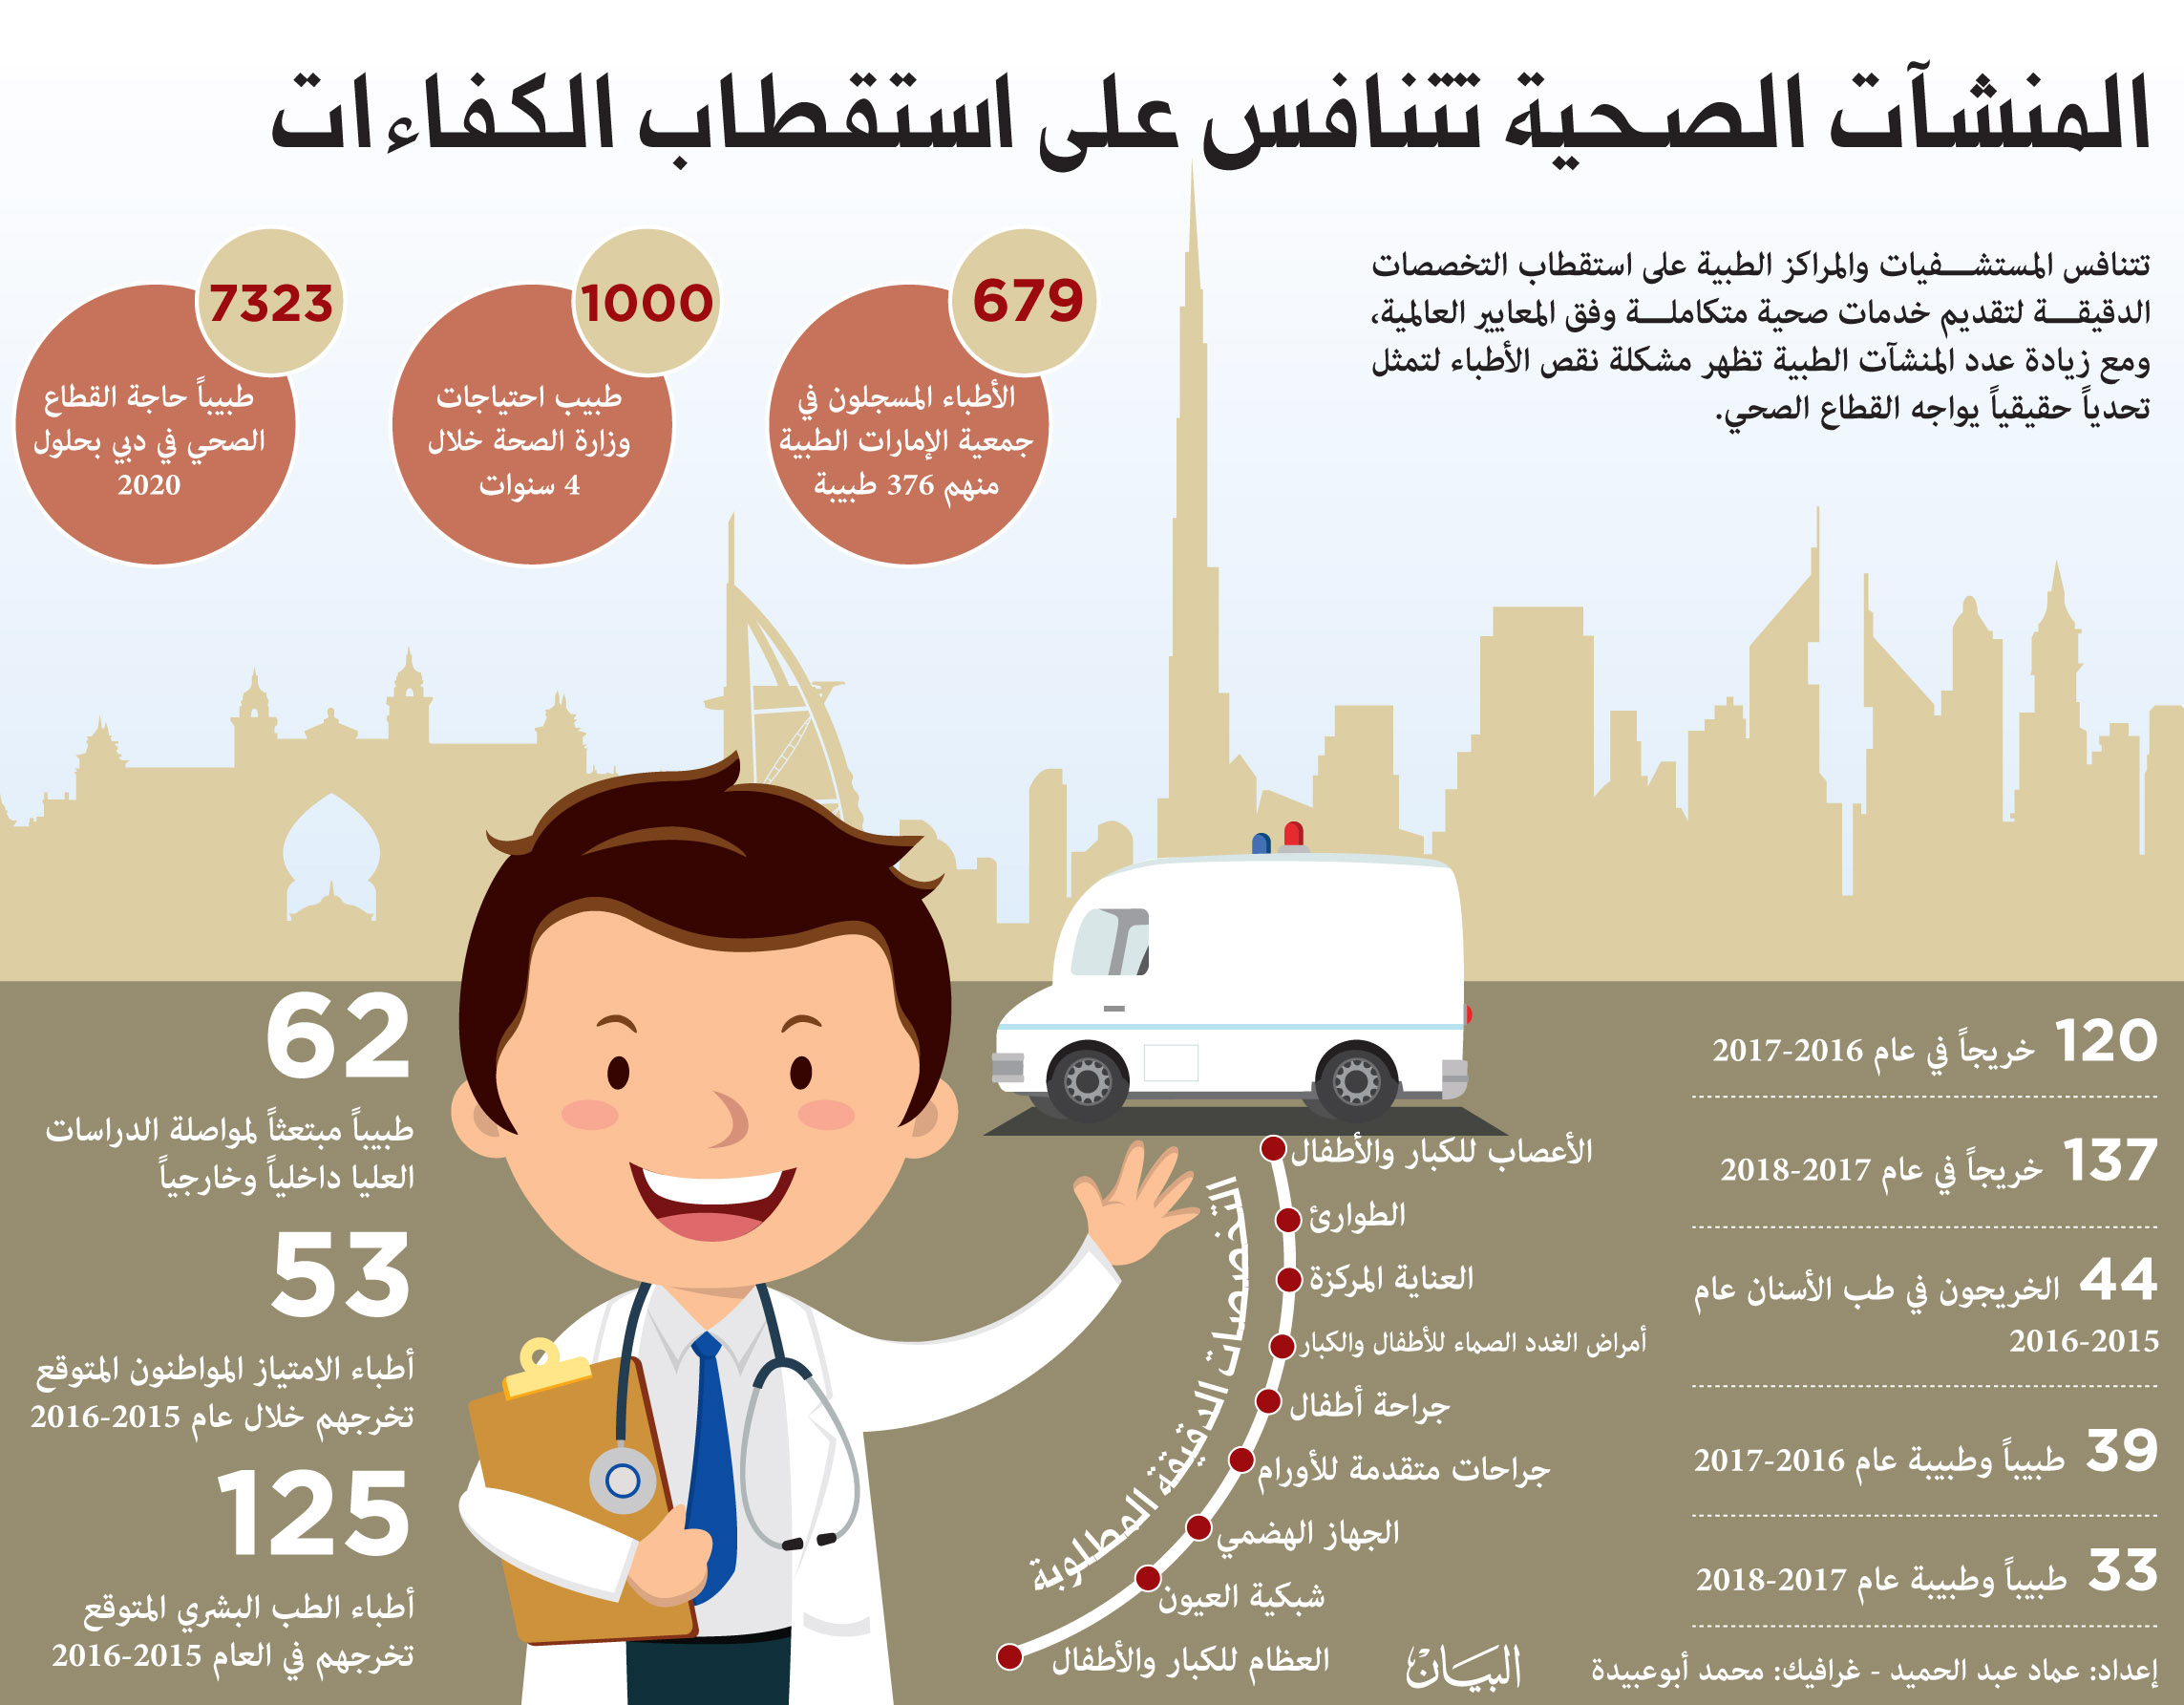 نقص في تخصصات الطب الدقيقة و الخاص يجذب الكوادر بمضاعفة الرواتب عبر الإمارات أخبار وتقارير البيان